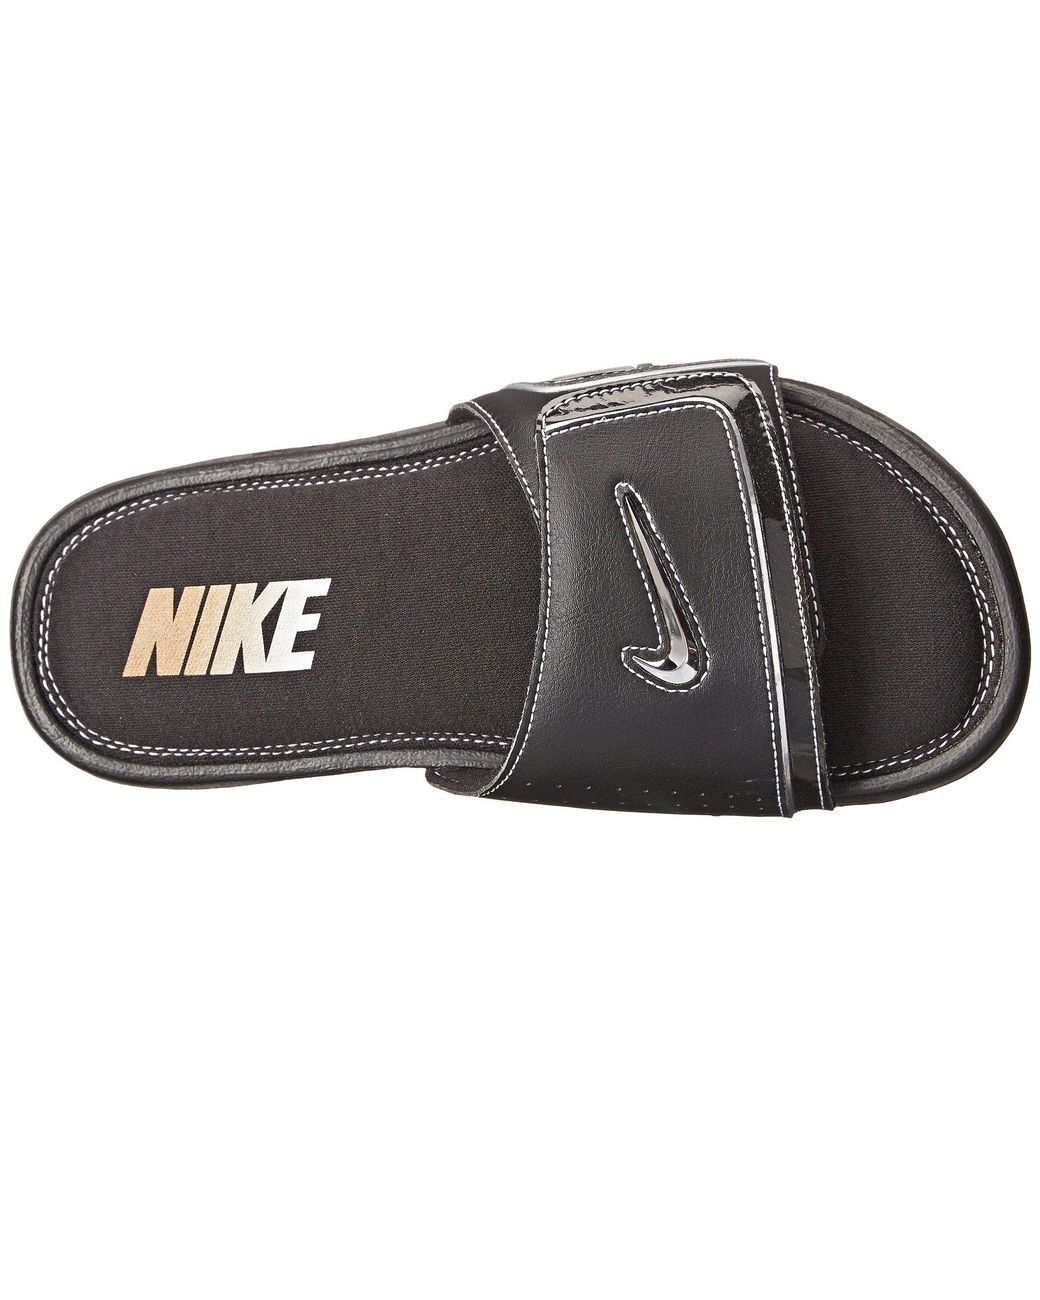 Nike Comfort Slide 2 in Black/Metallic Silver/White (Black) for Men | Lyst